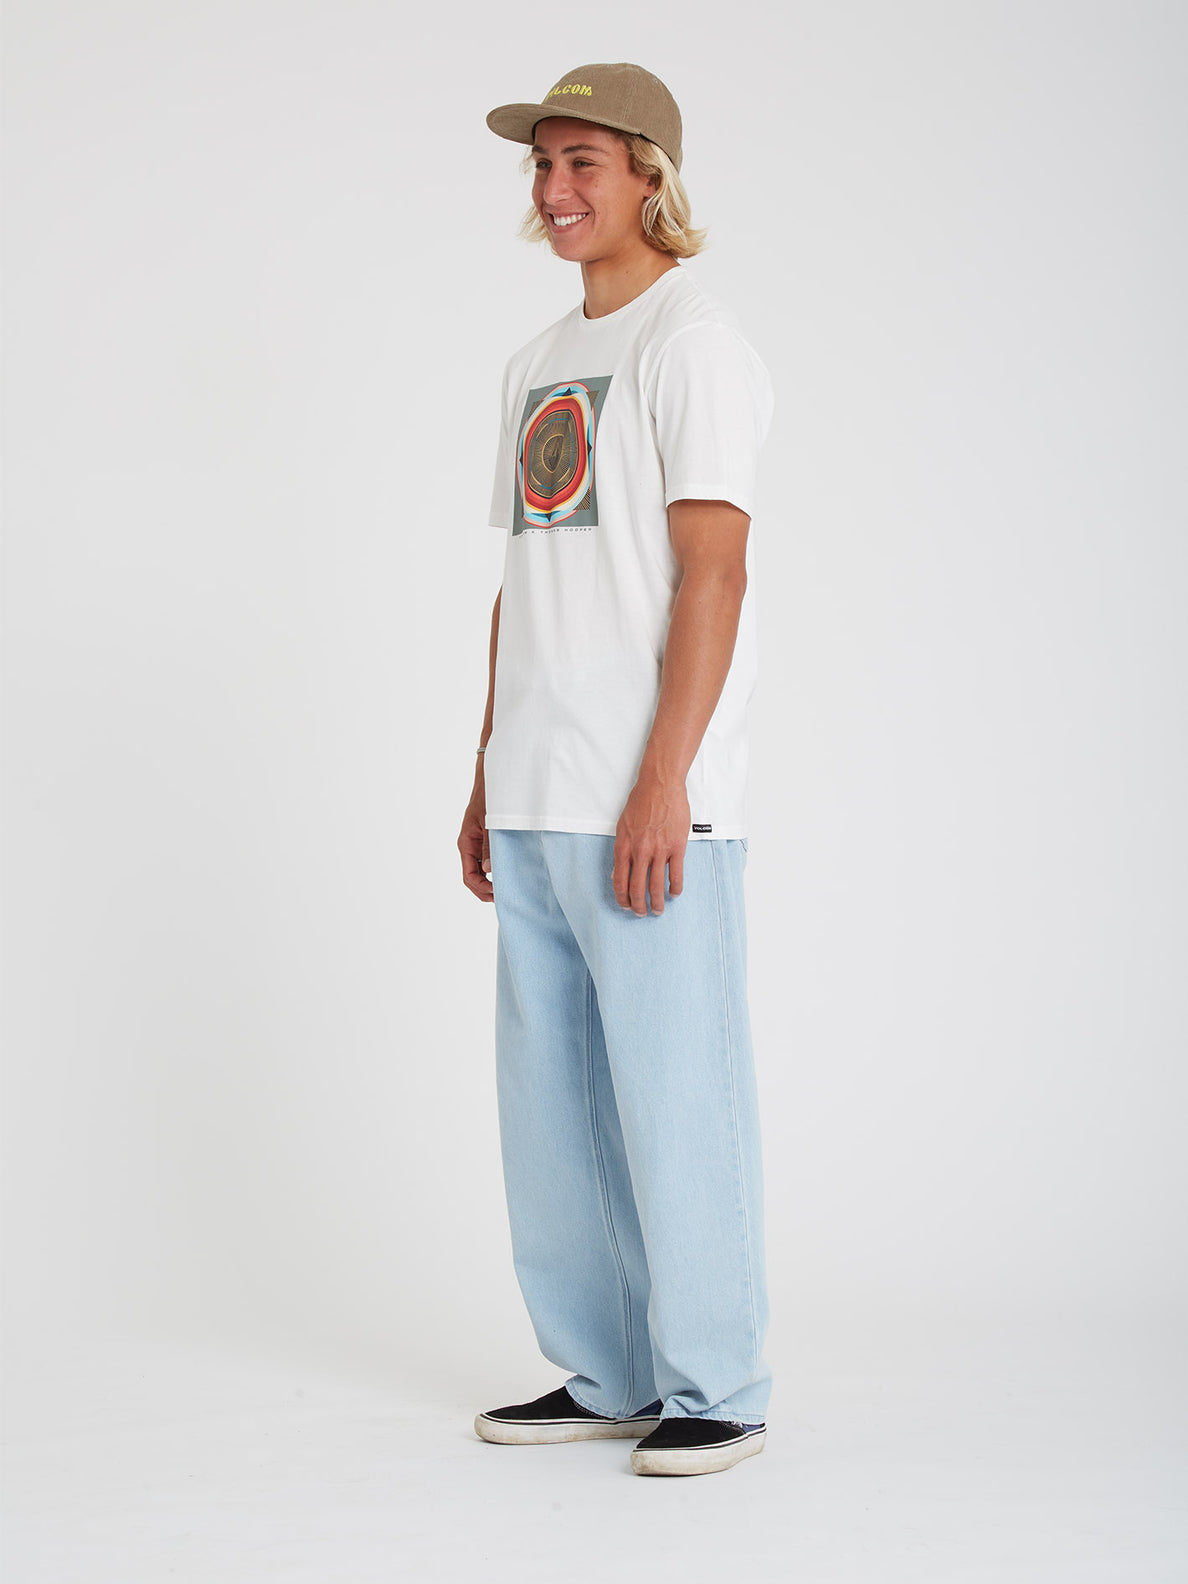 Shirts + Tees - Urban Outfitters  Baseball shirt outfit, Baseball